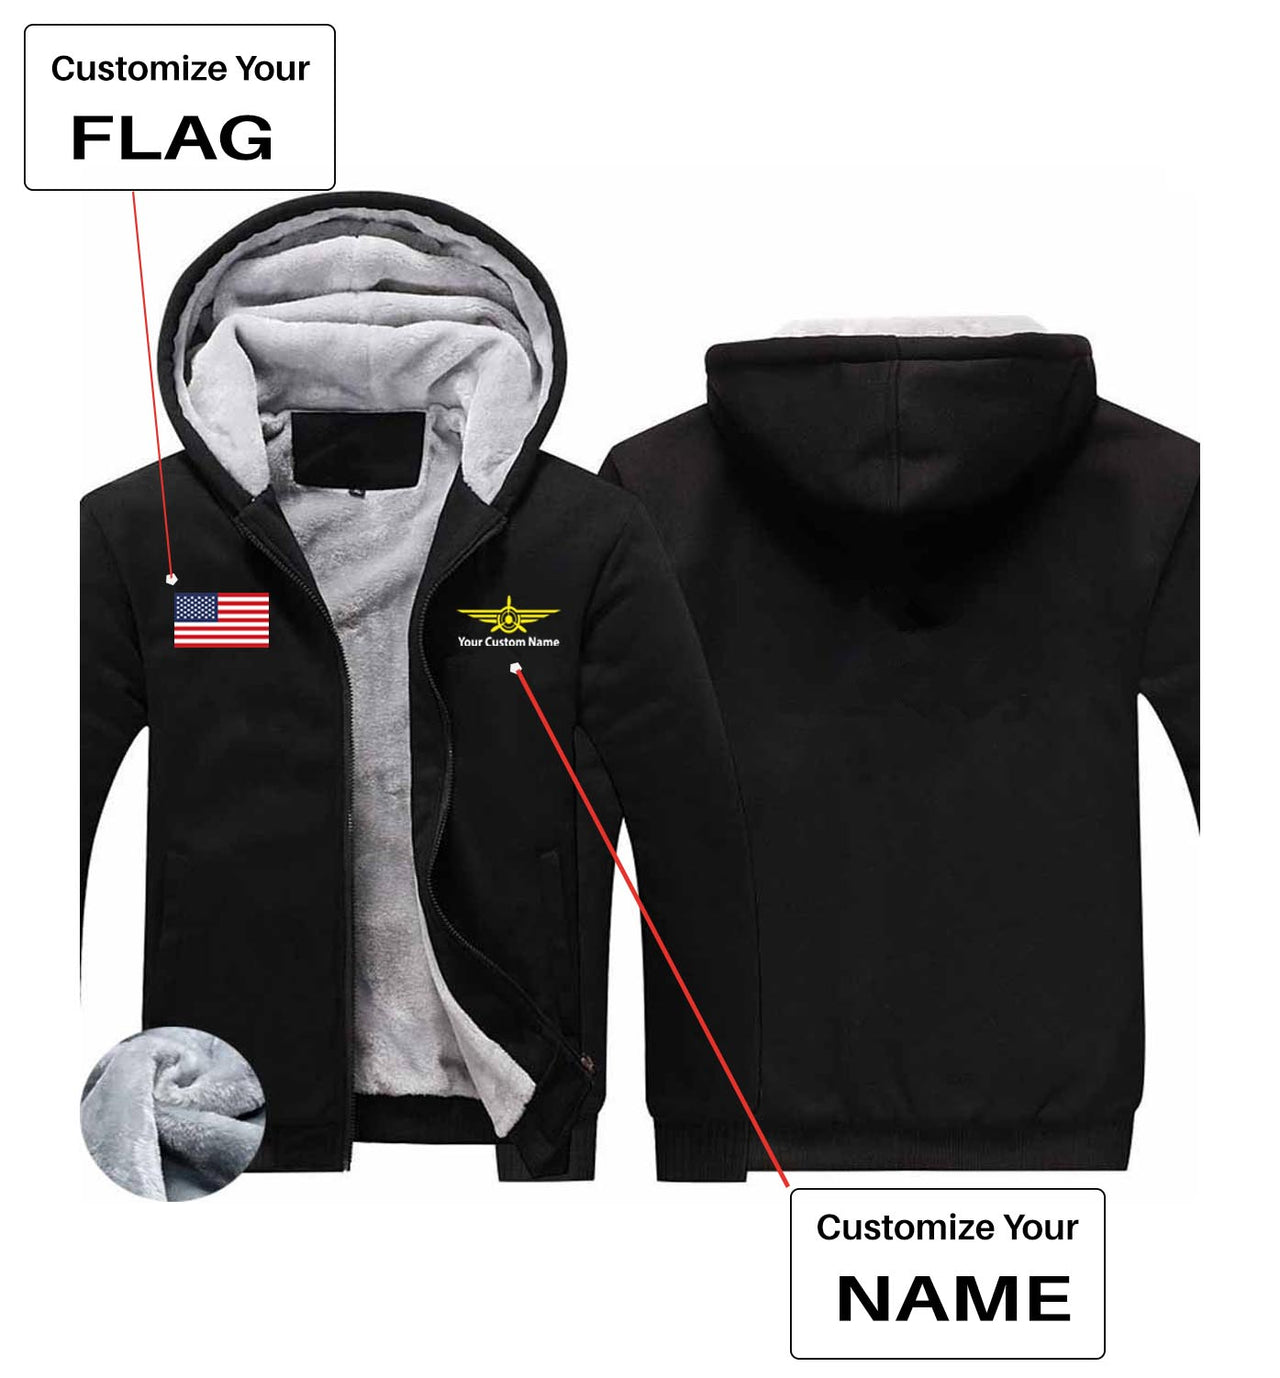 Your Custom Name & Flag (Badge 3) Designed Zipped Sweatshirts